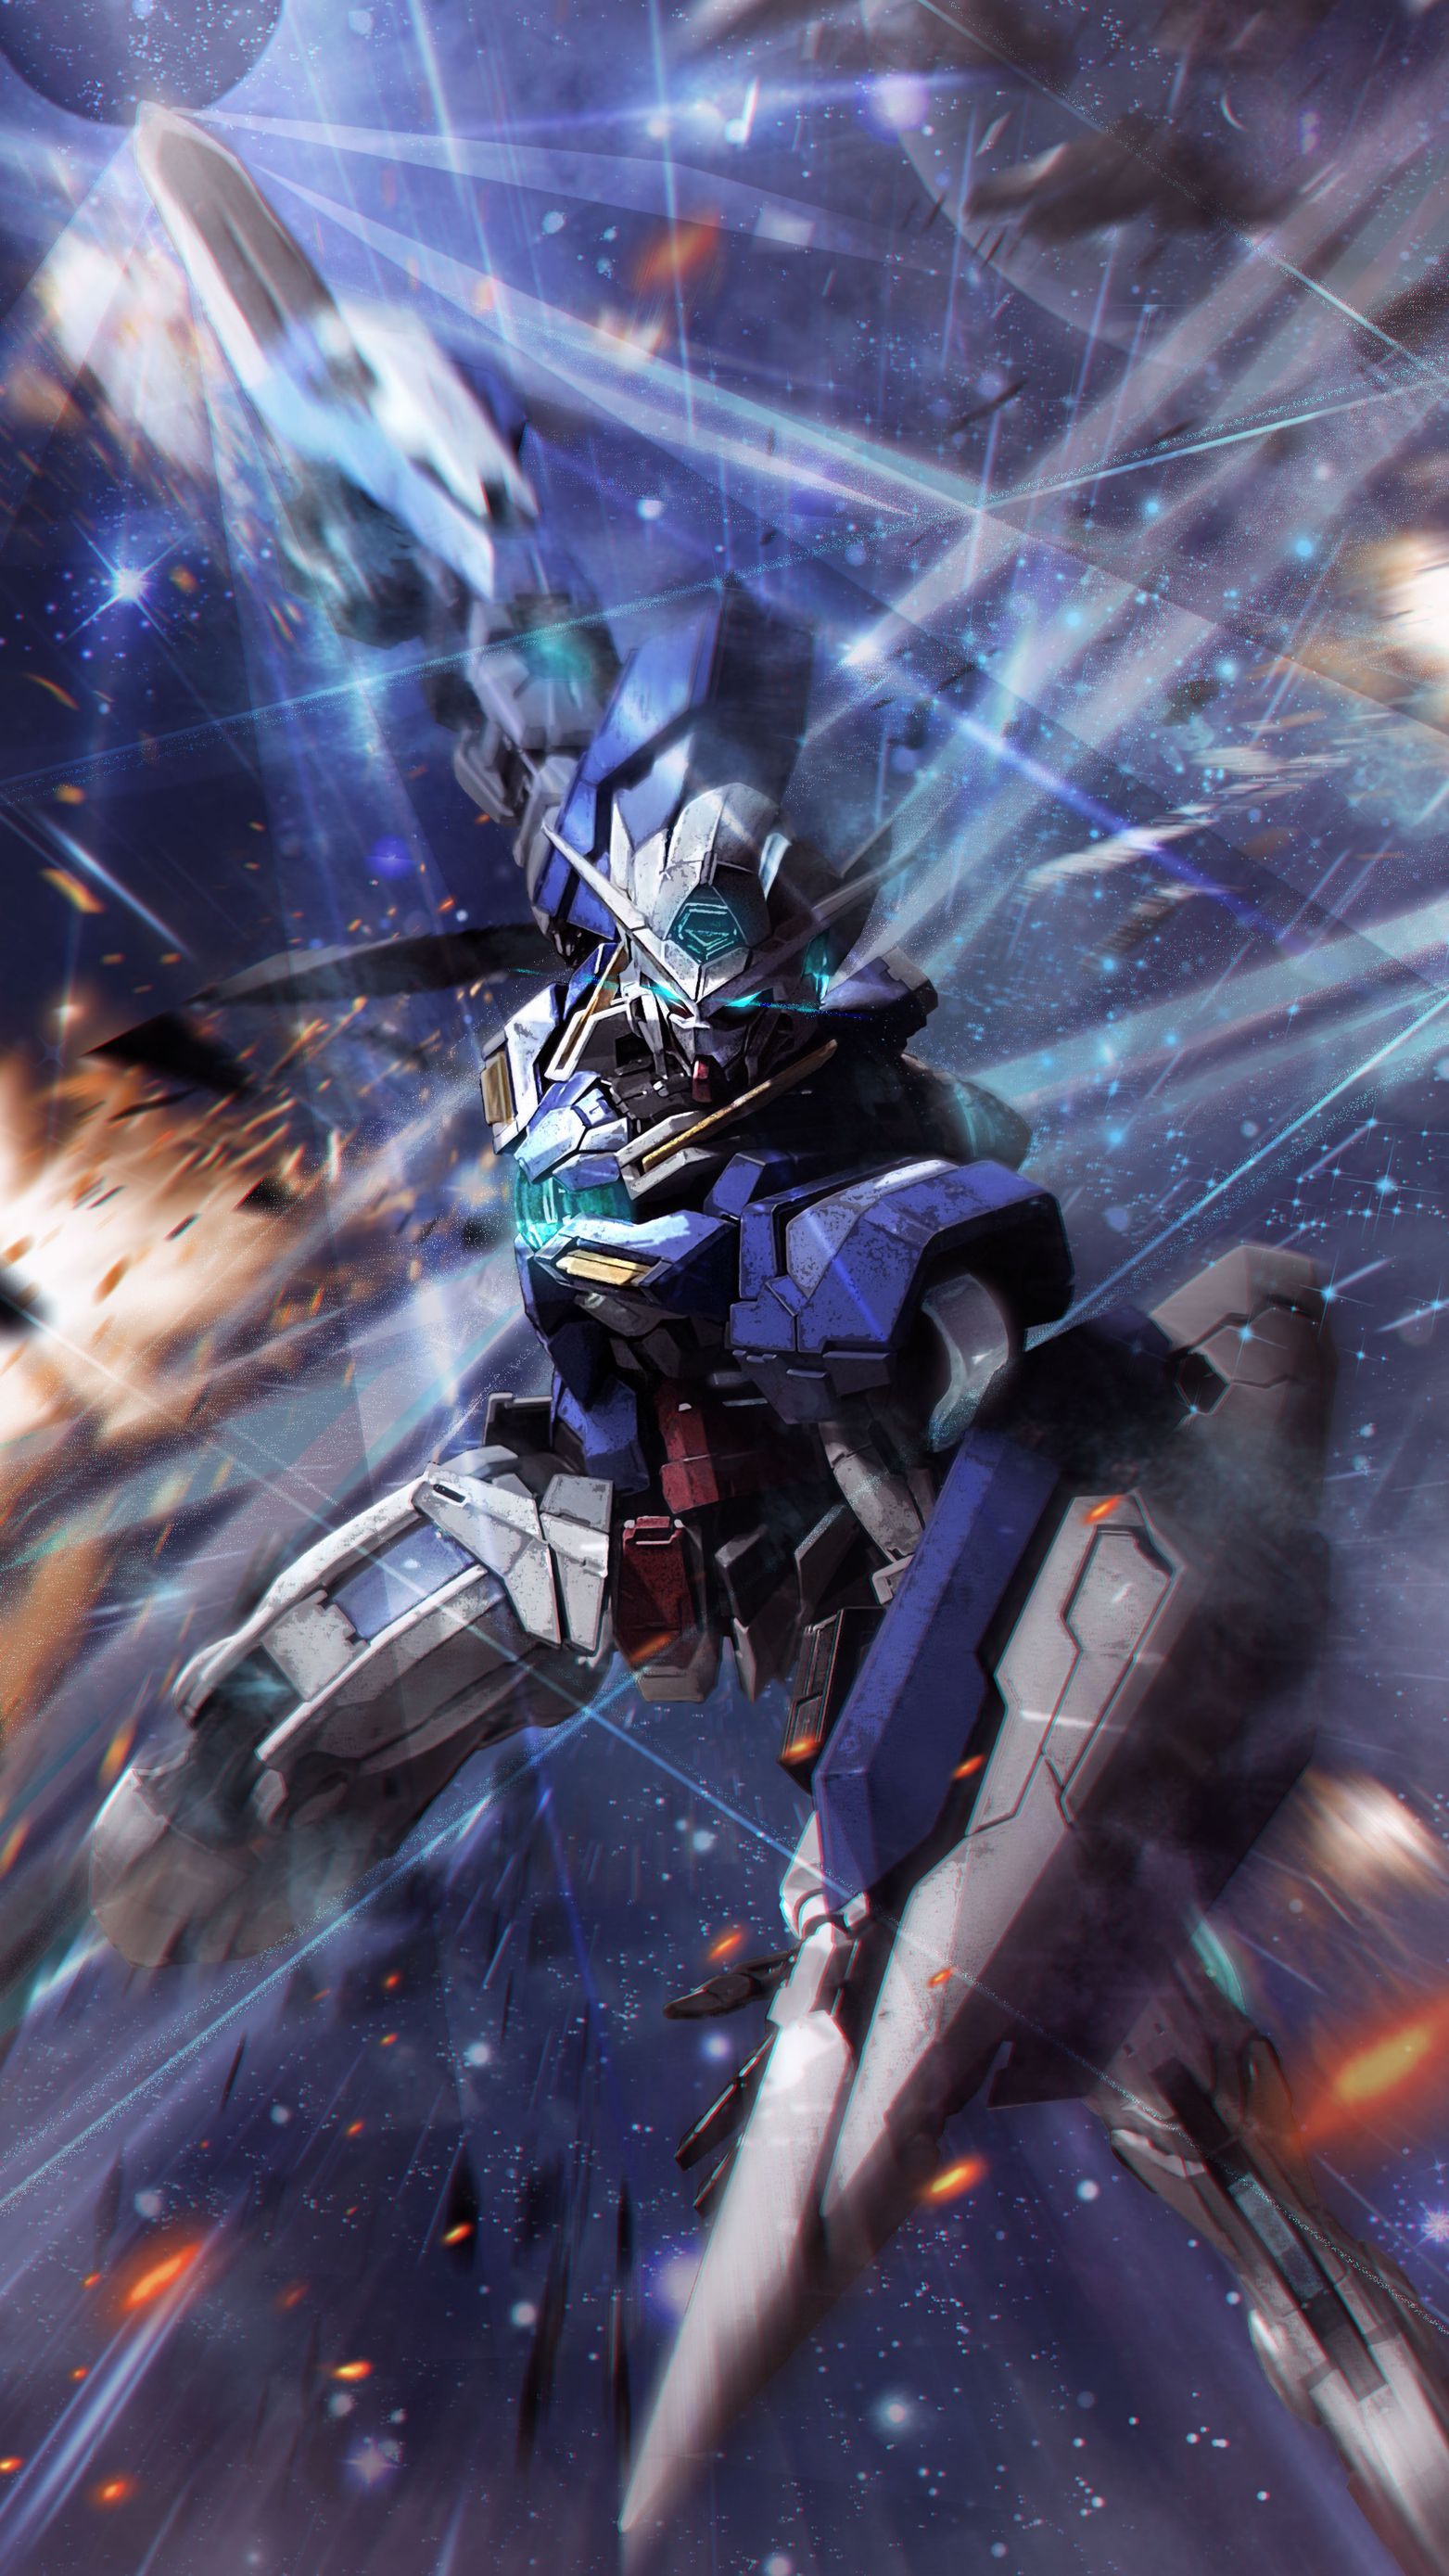 Anime Robot Gundam Mobile Suit Gundam 00 Gundam Exia Super Robot Wars Artwork Digital Art Fan Art 1563x2778